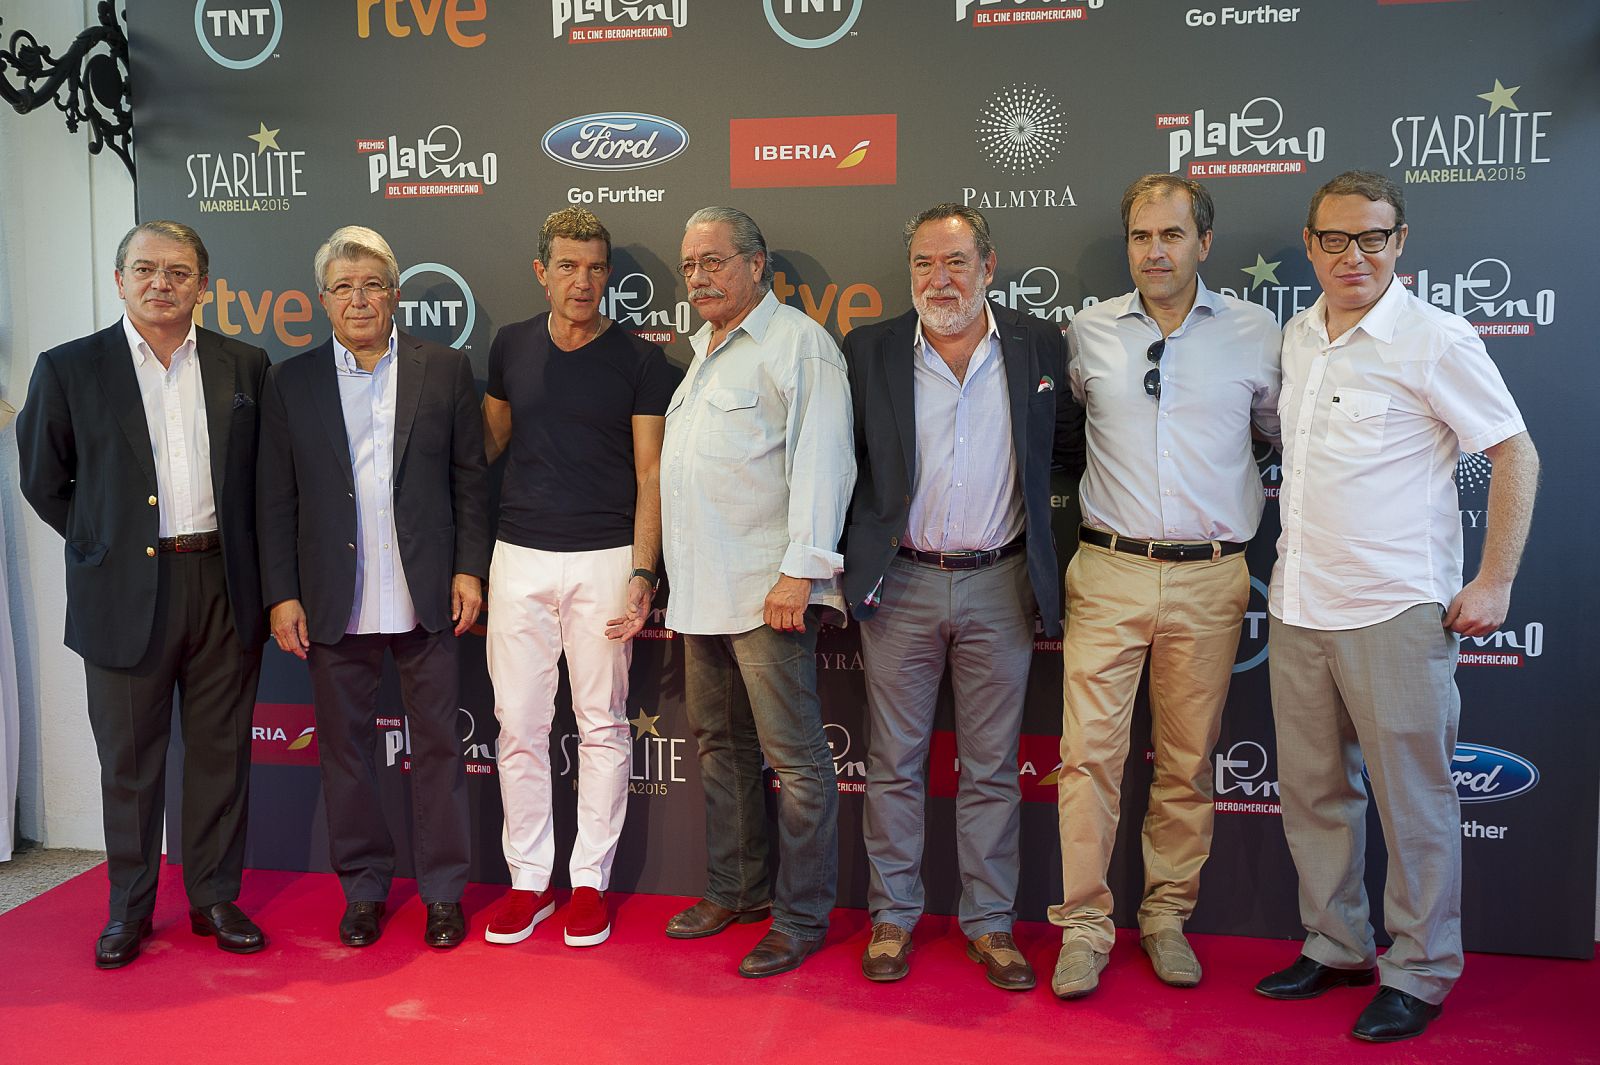 José Ramón Díez y Antonio Banderas junto al resto de los asistentes a la rueda de prensa de los Premios Platino